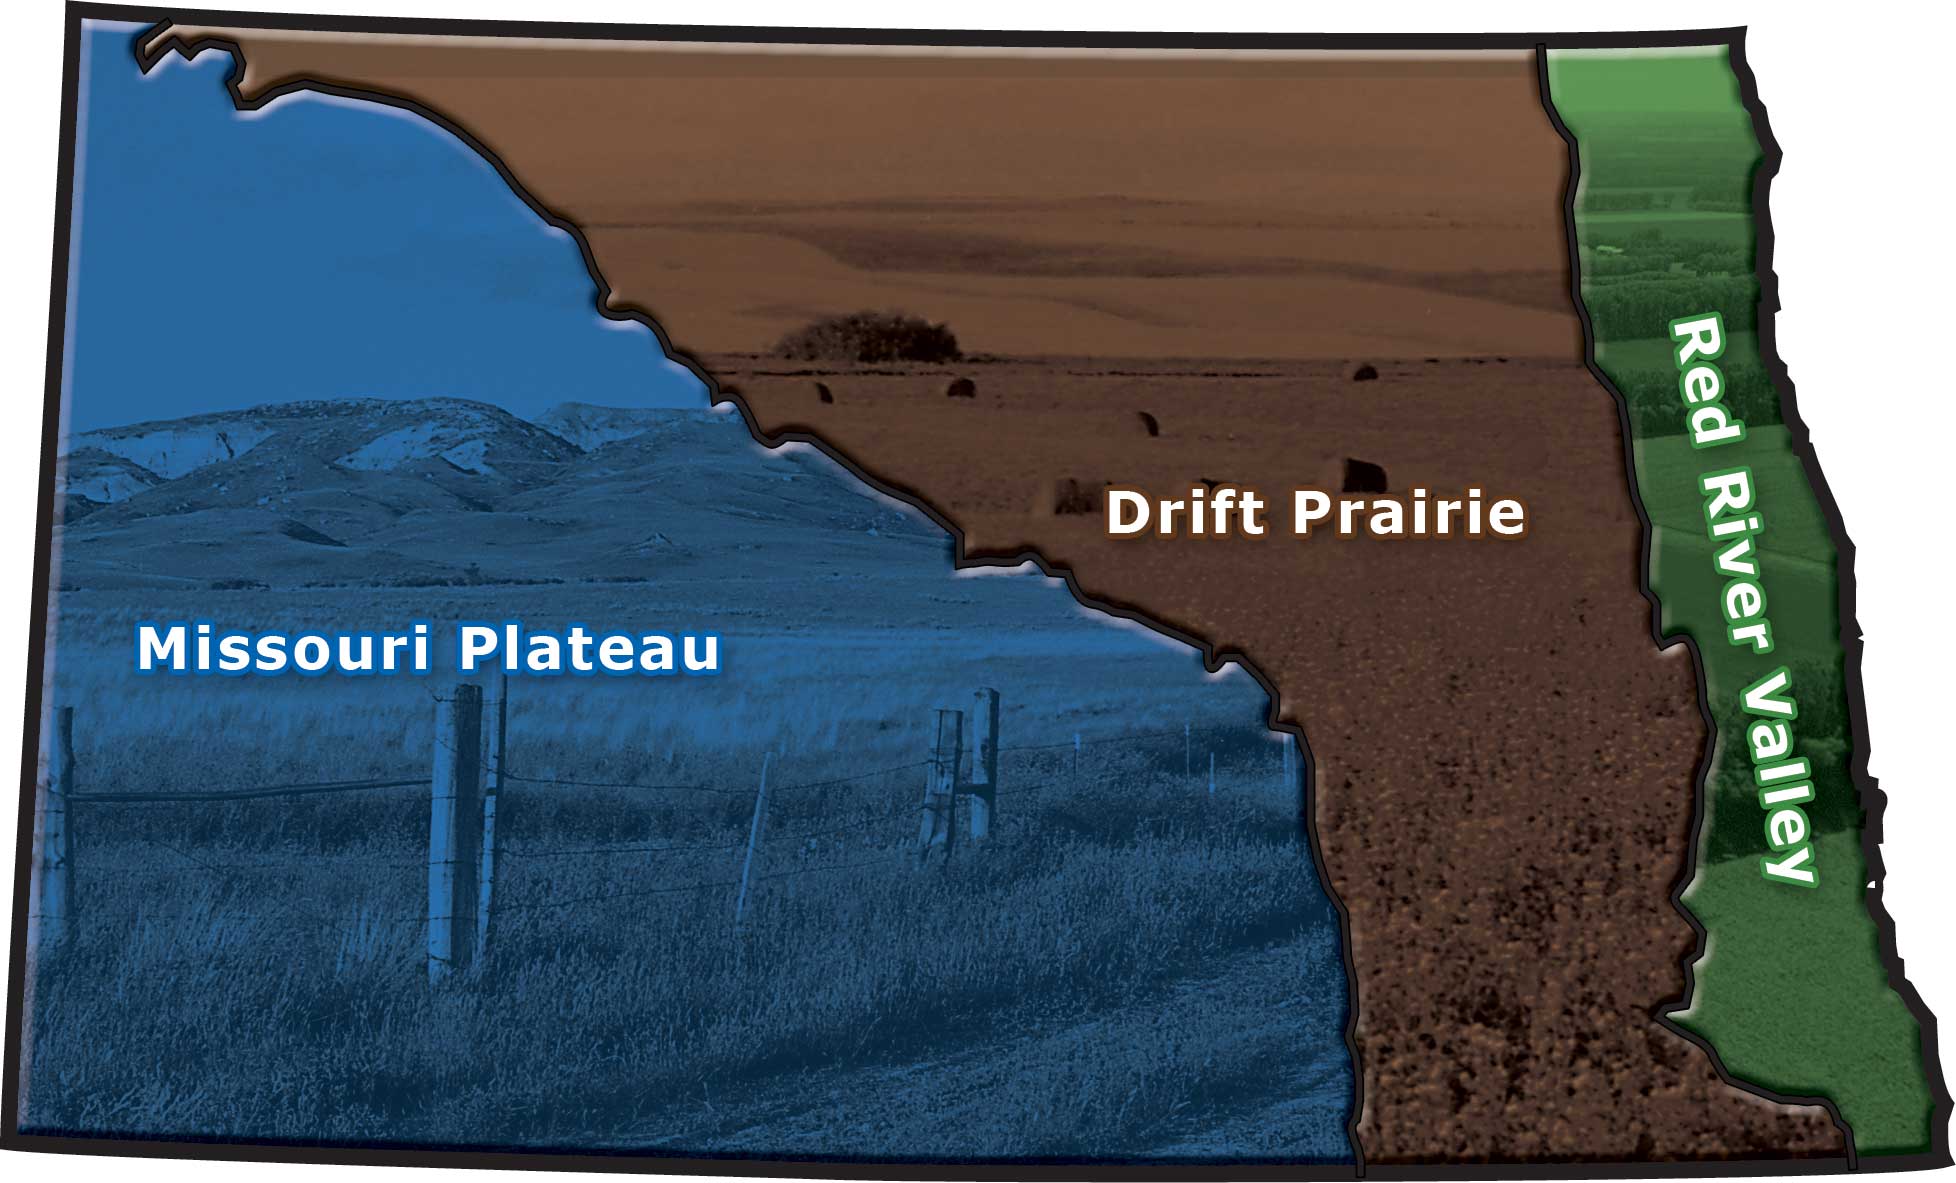 Figure 62. North Dakota has three main geographic regions